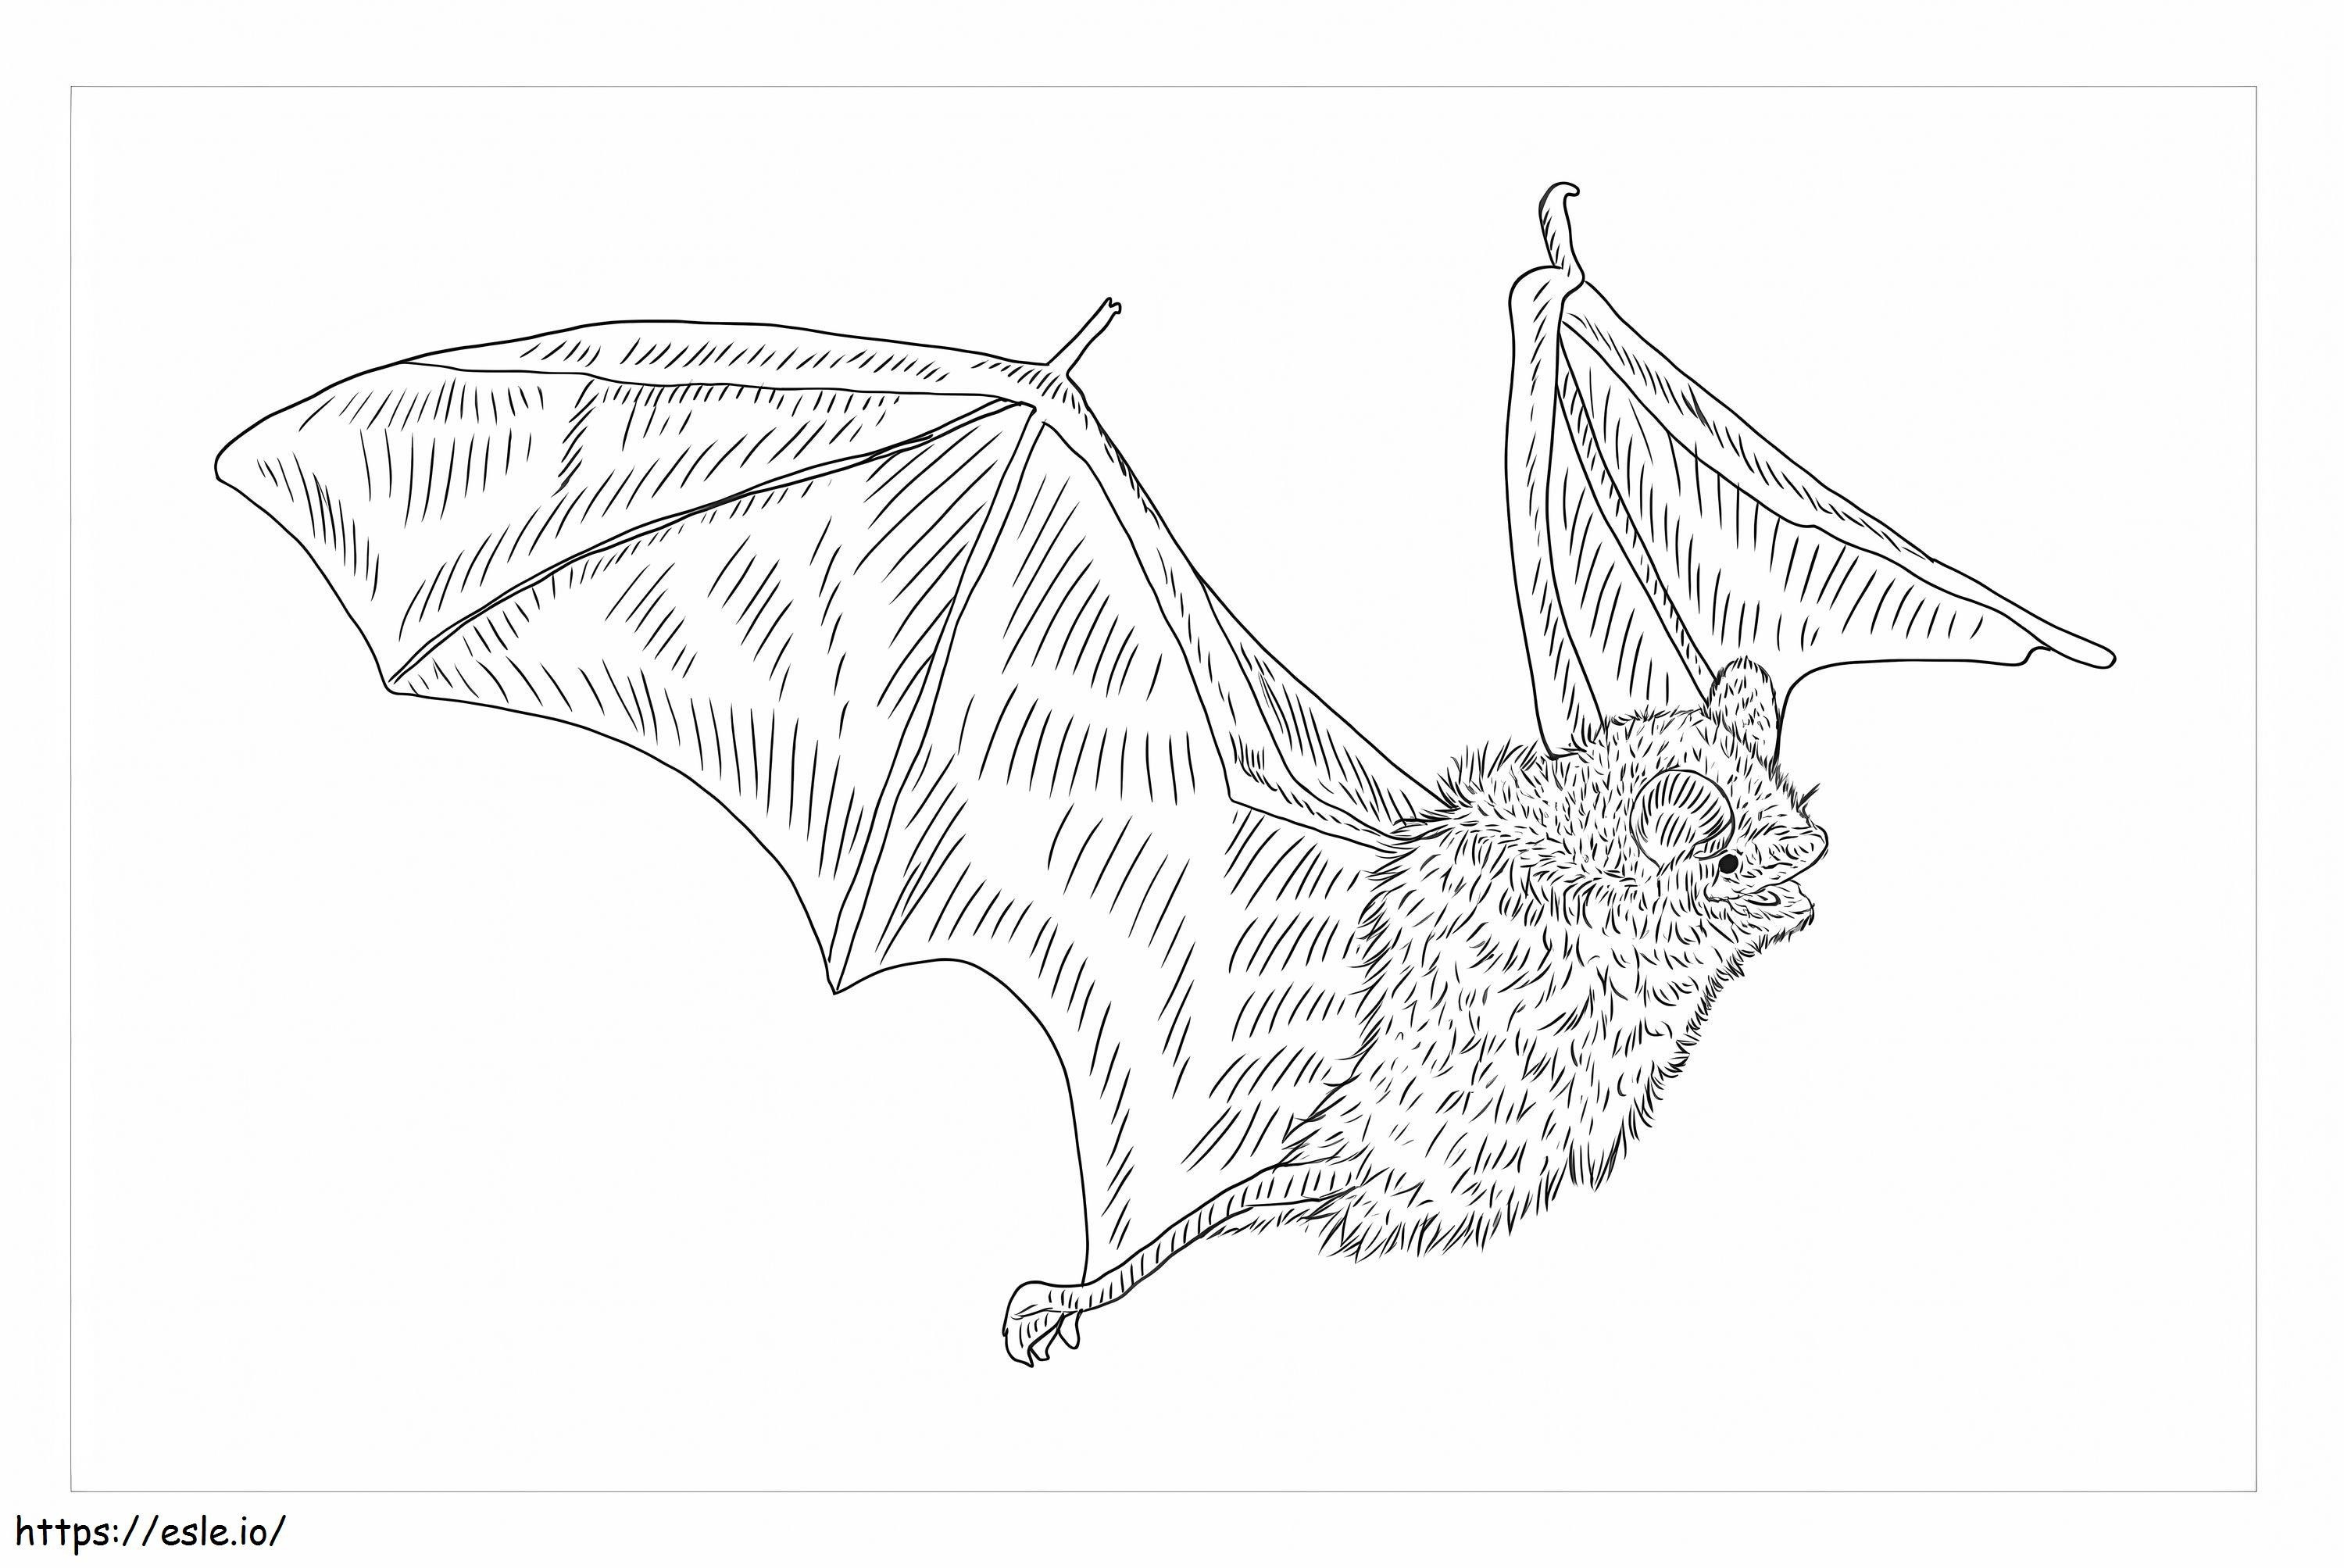 Tricolor Bat coloring page